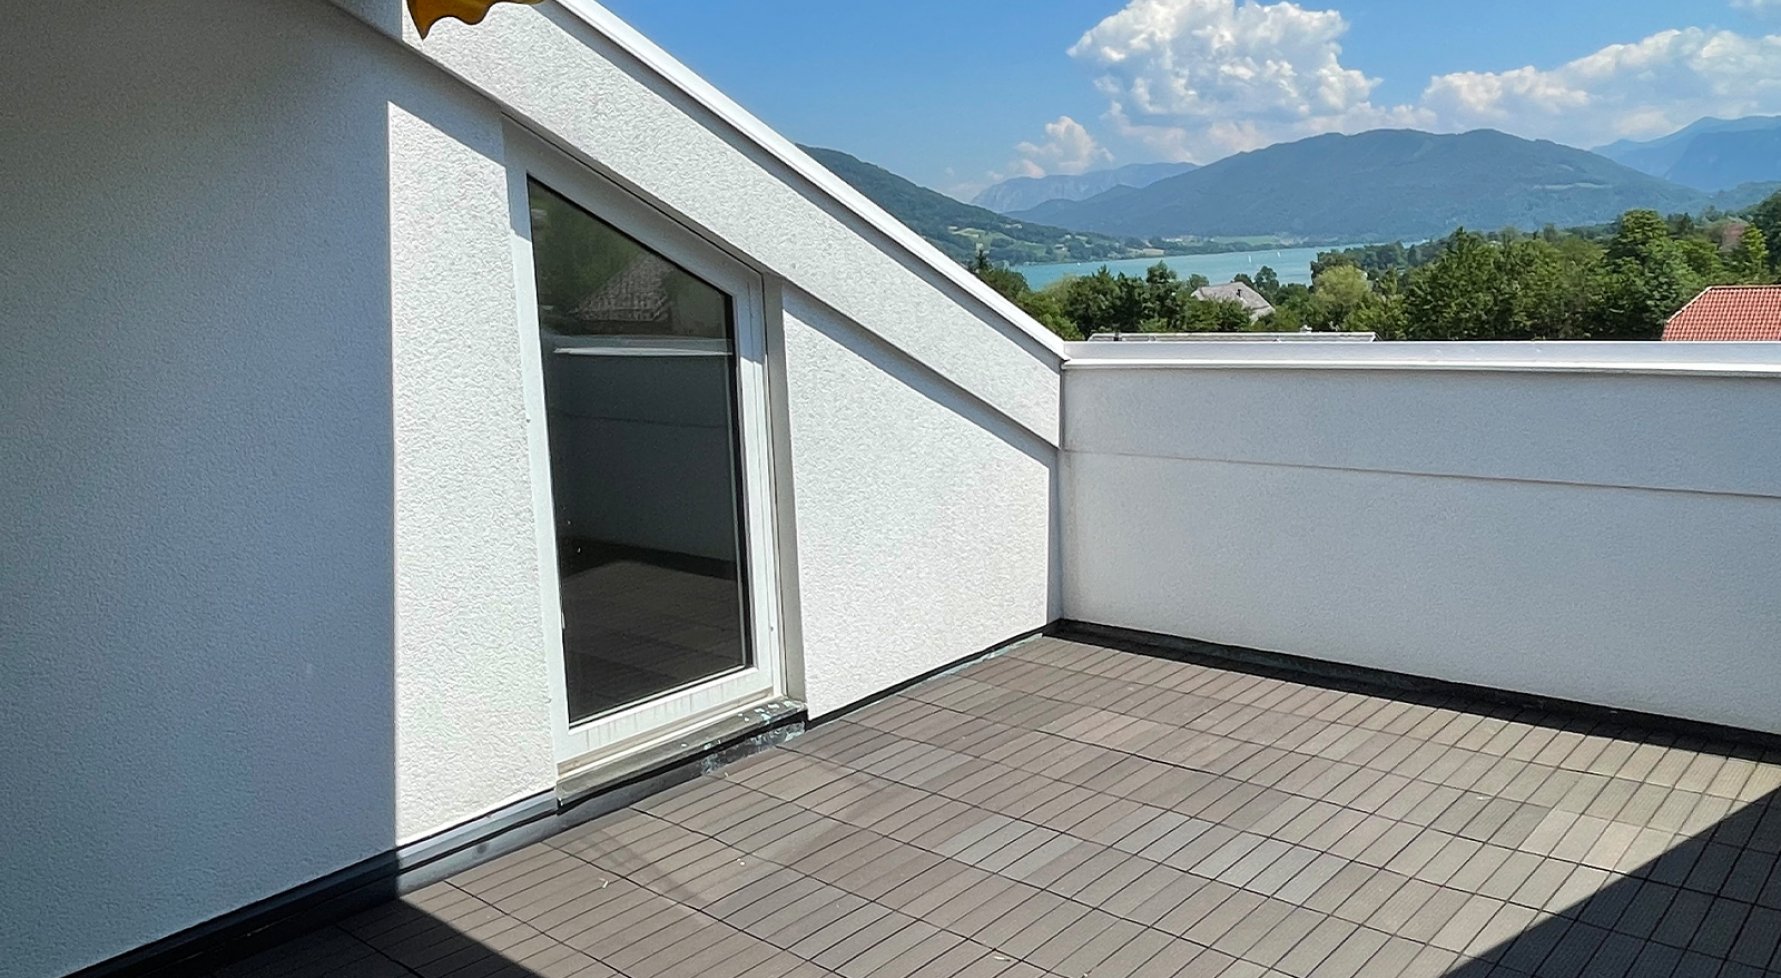 Immobilie in 5310 Mondsee-Höribach: Dachgeschoss-Maisonette mit Zweitwohnsitz in Seenähe! - bild 1